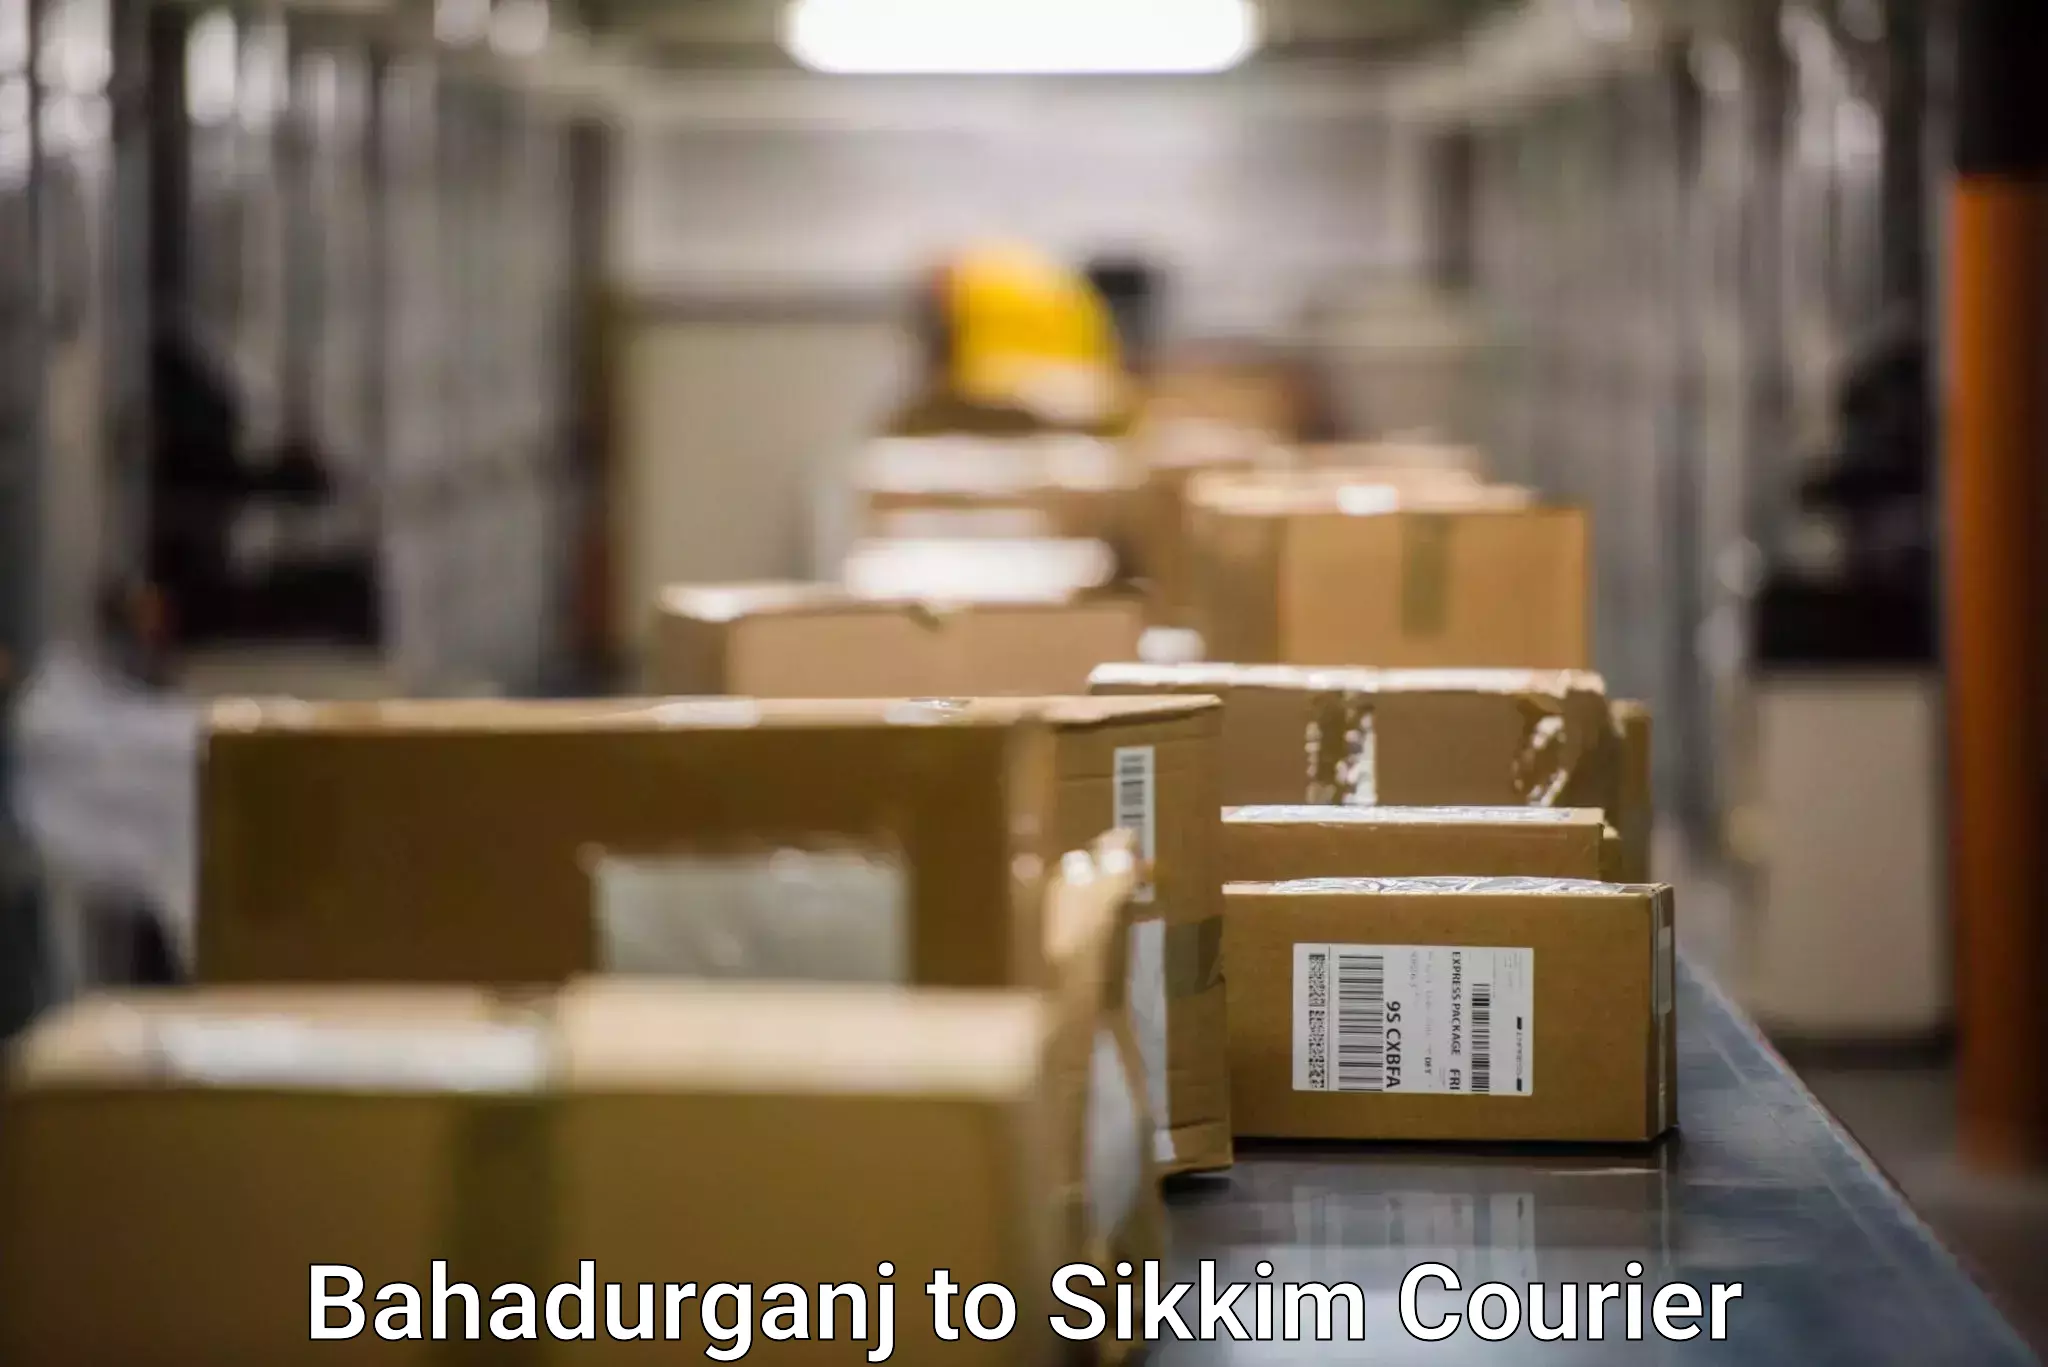 Seamless shipping experience Bahadurganj to Rangpo